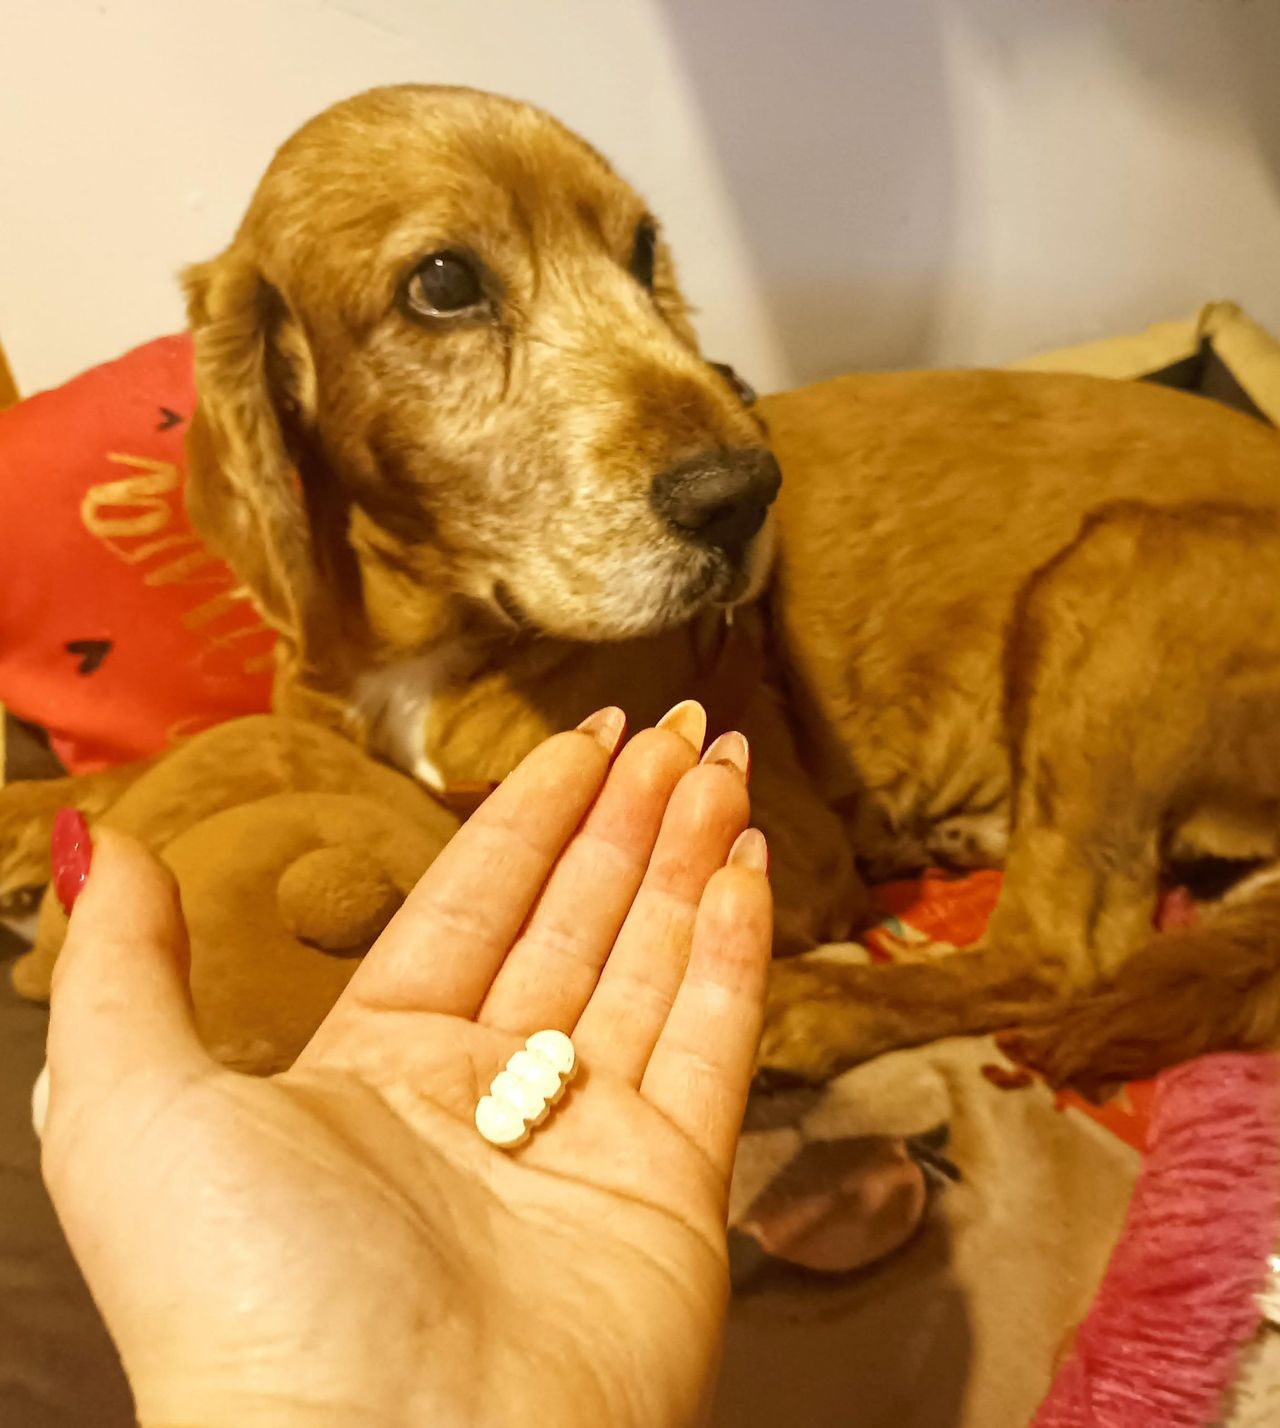 co zrobić żeby pies zjadł tabletkę, fot. Genialne.pl